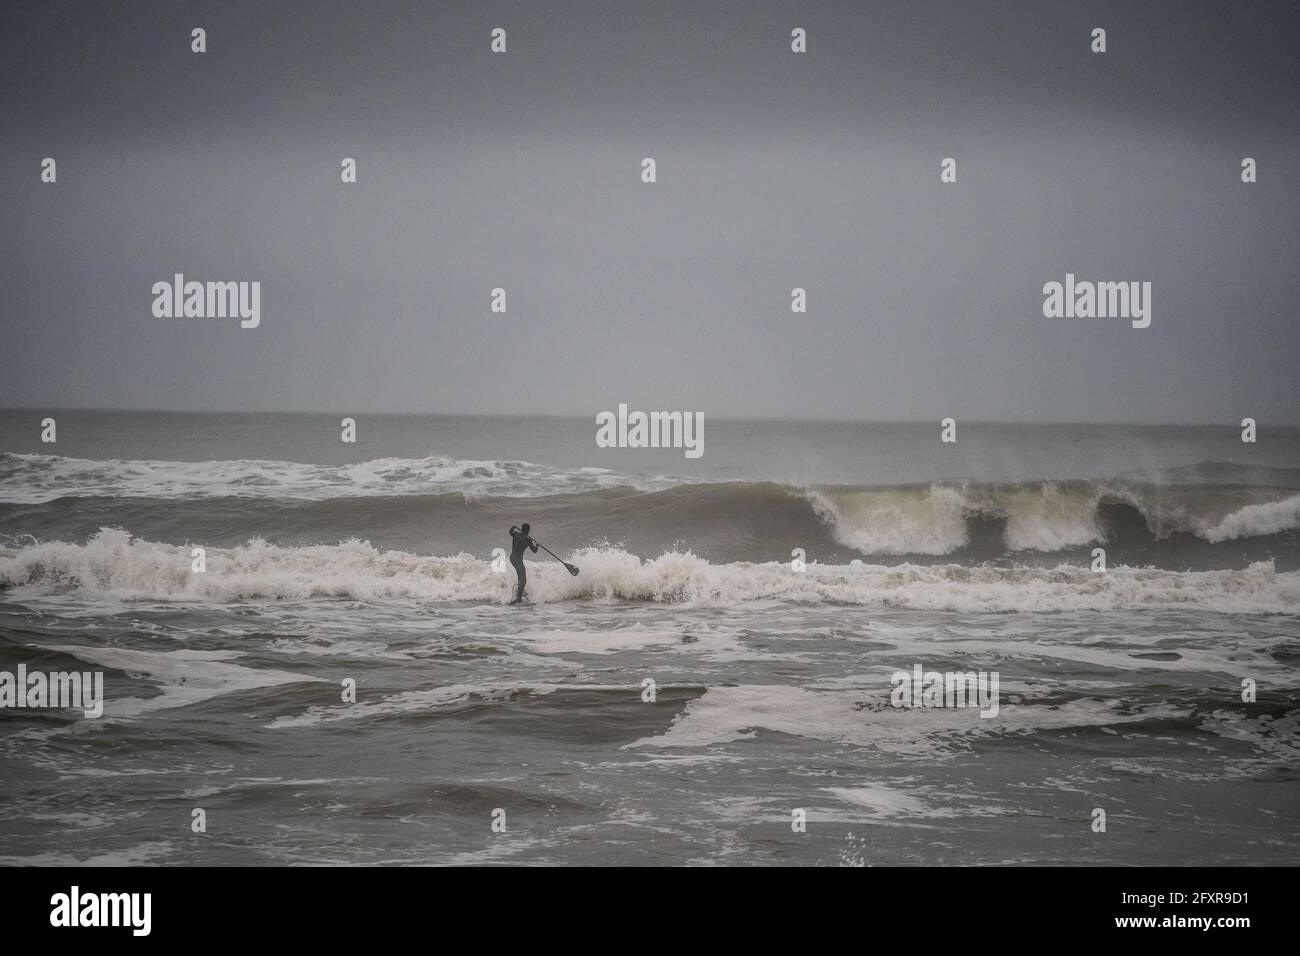 Mann, der versucht, auf seinem Stand-up-Paddle-Board, Nags Head, North Carolina, Vereinigte Staaten von Amerika, Nordamerika, durch einen großen Küstenbruch zu kommen Stockfoto